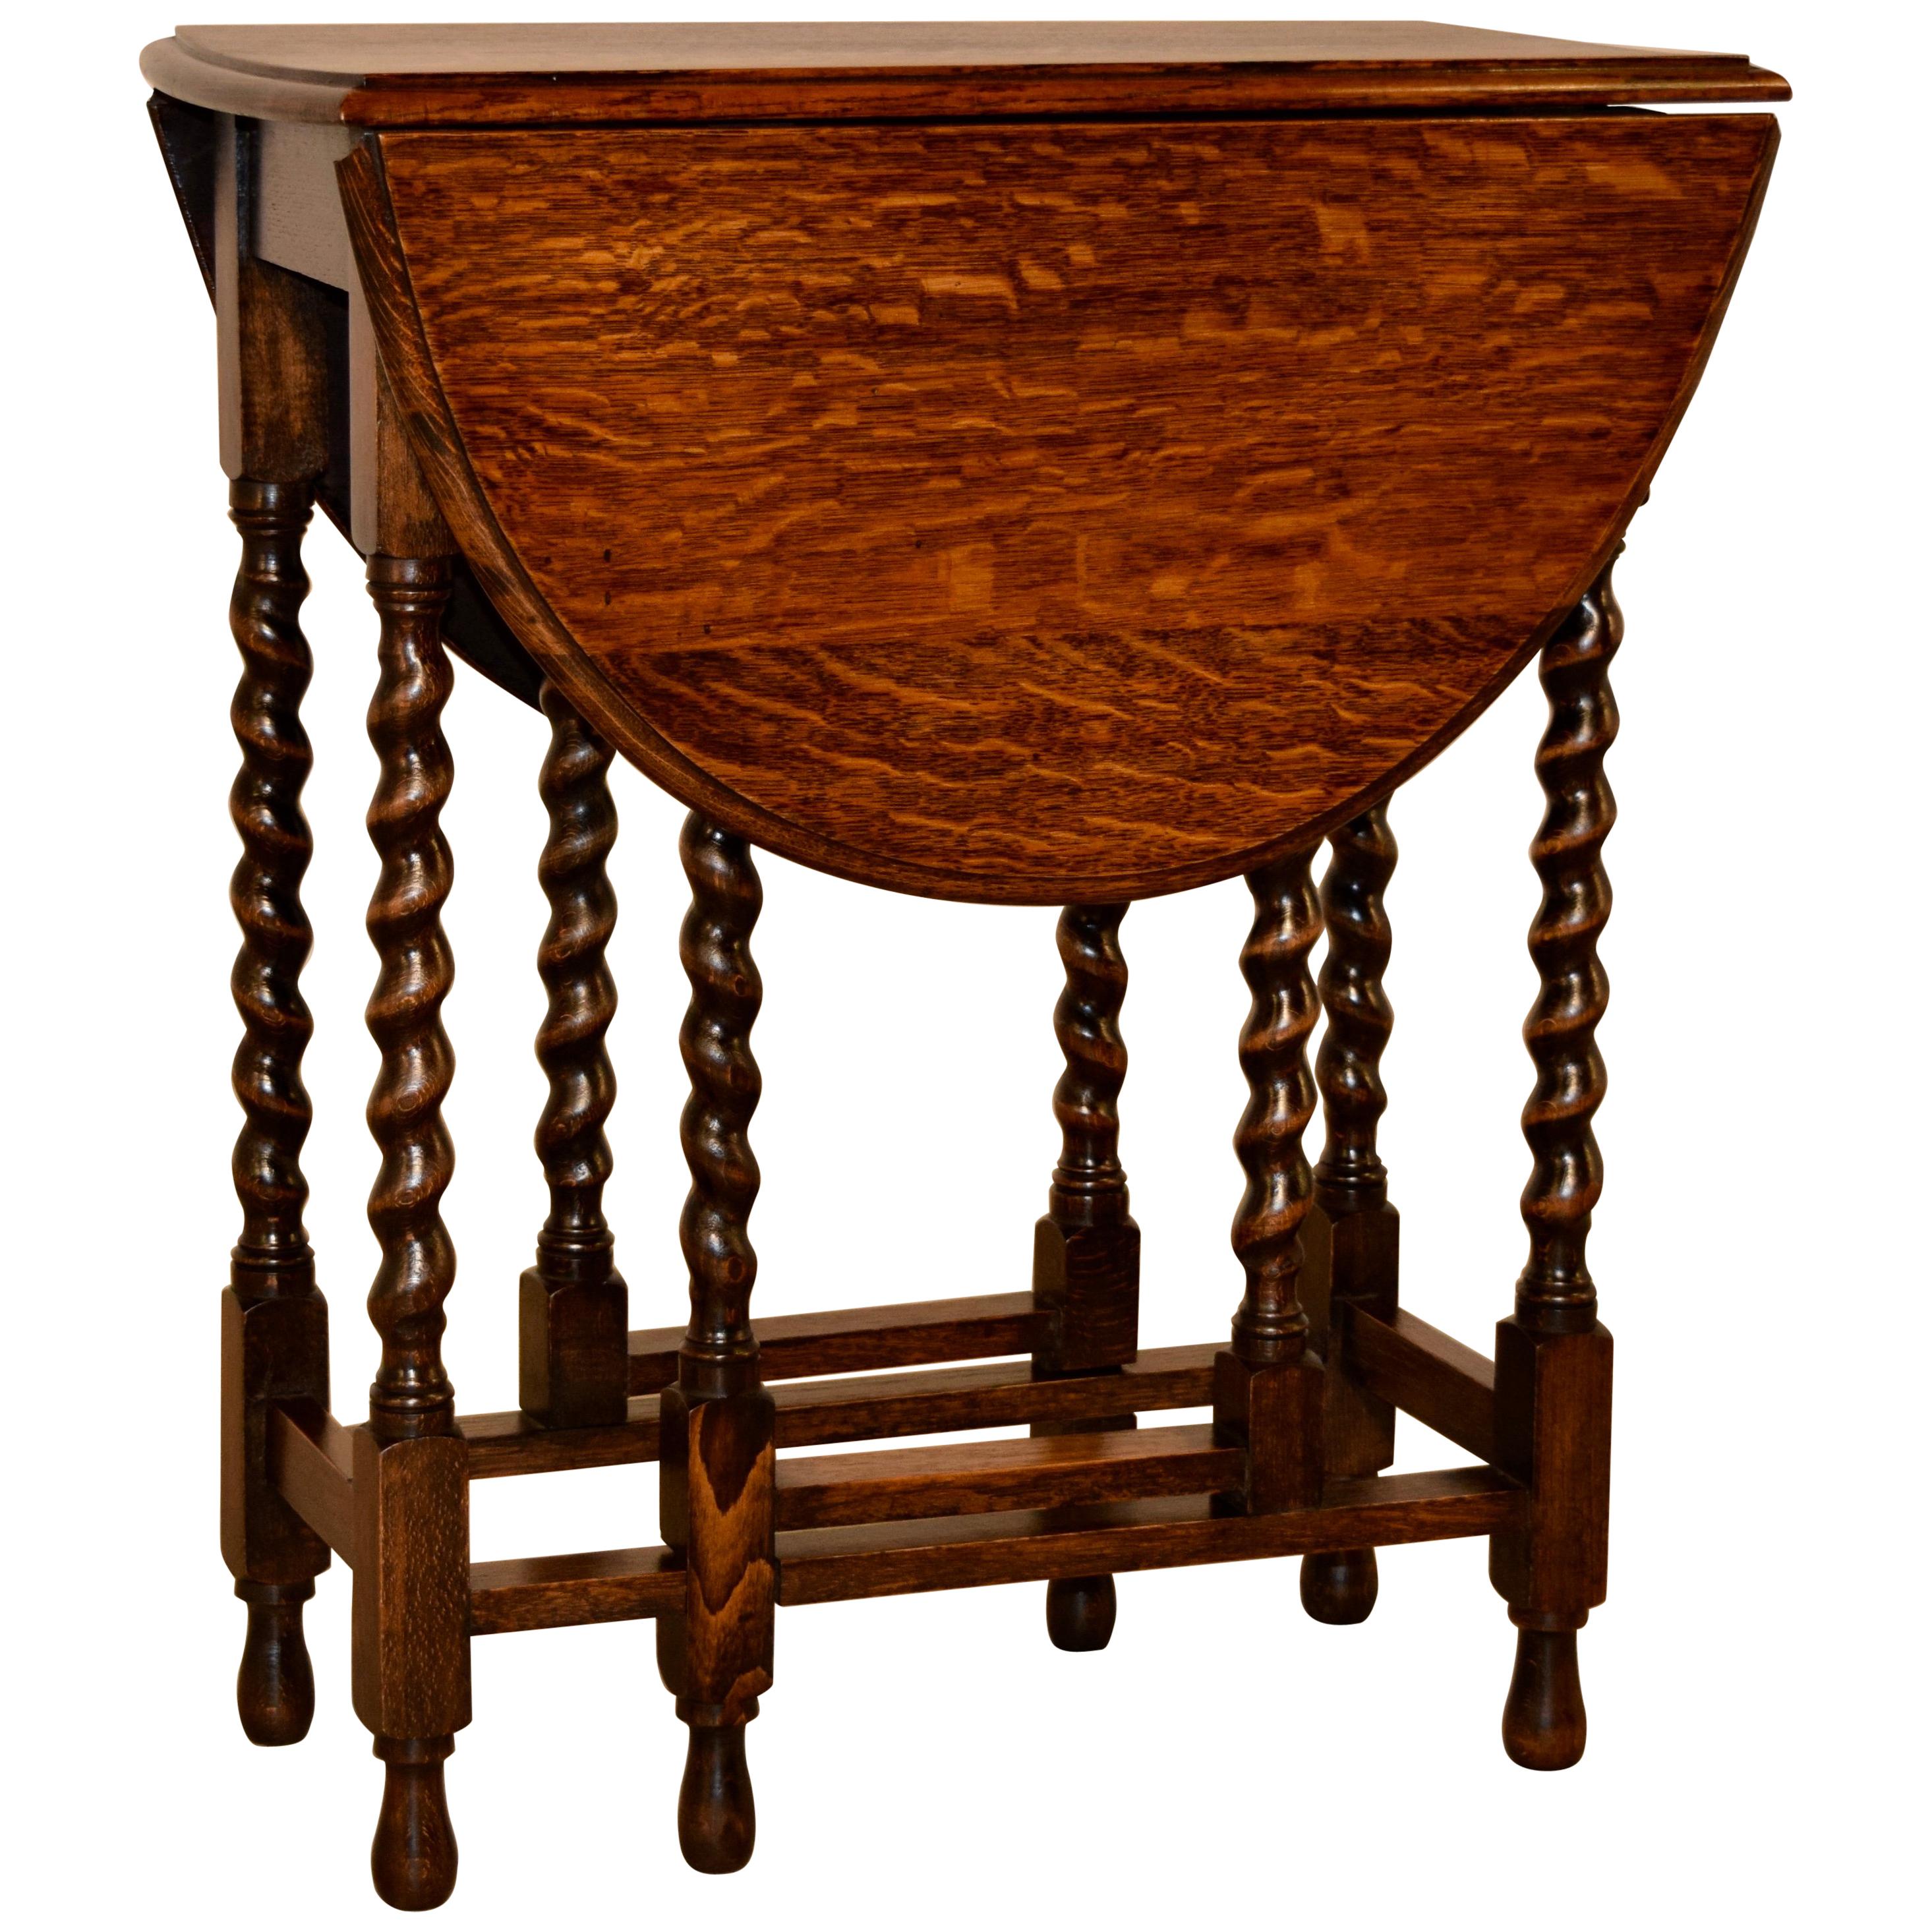 English Oak Gateleg Table, circa 1900